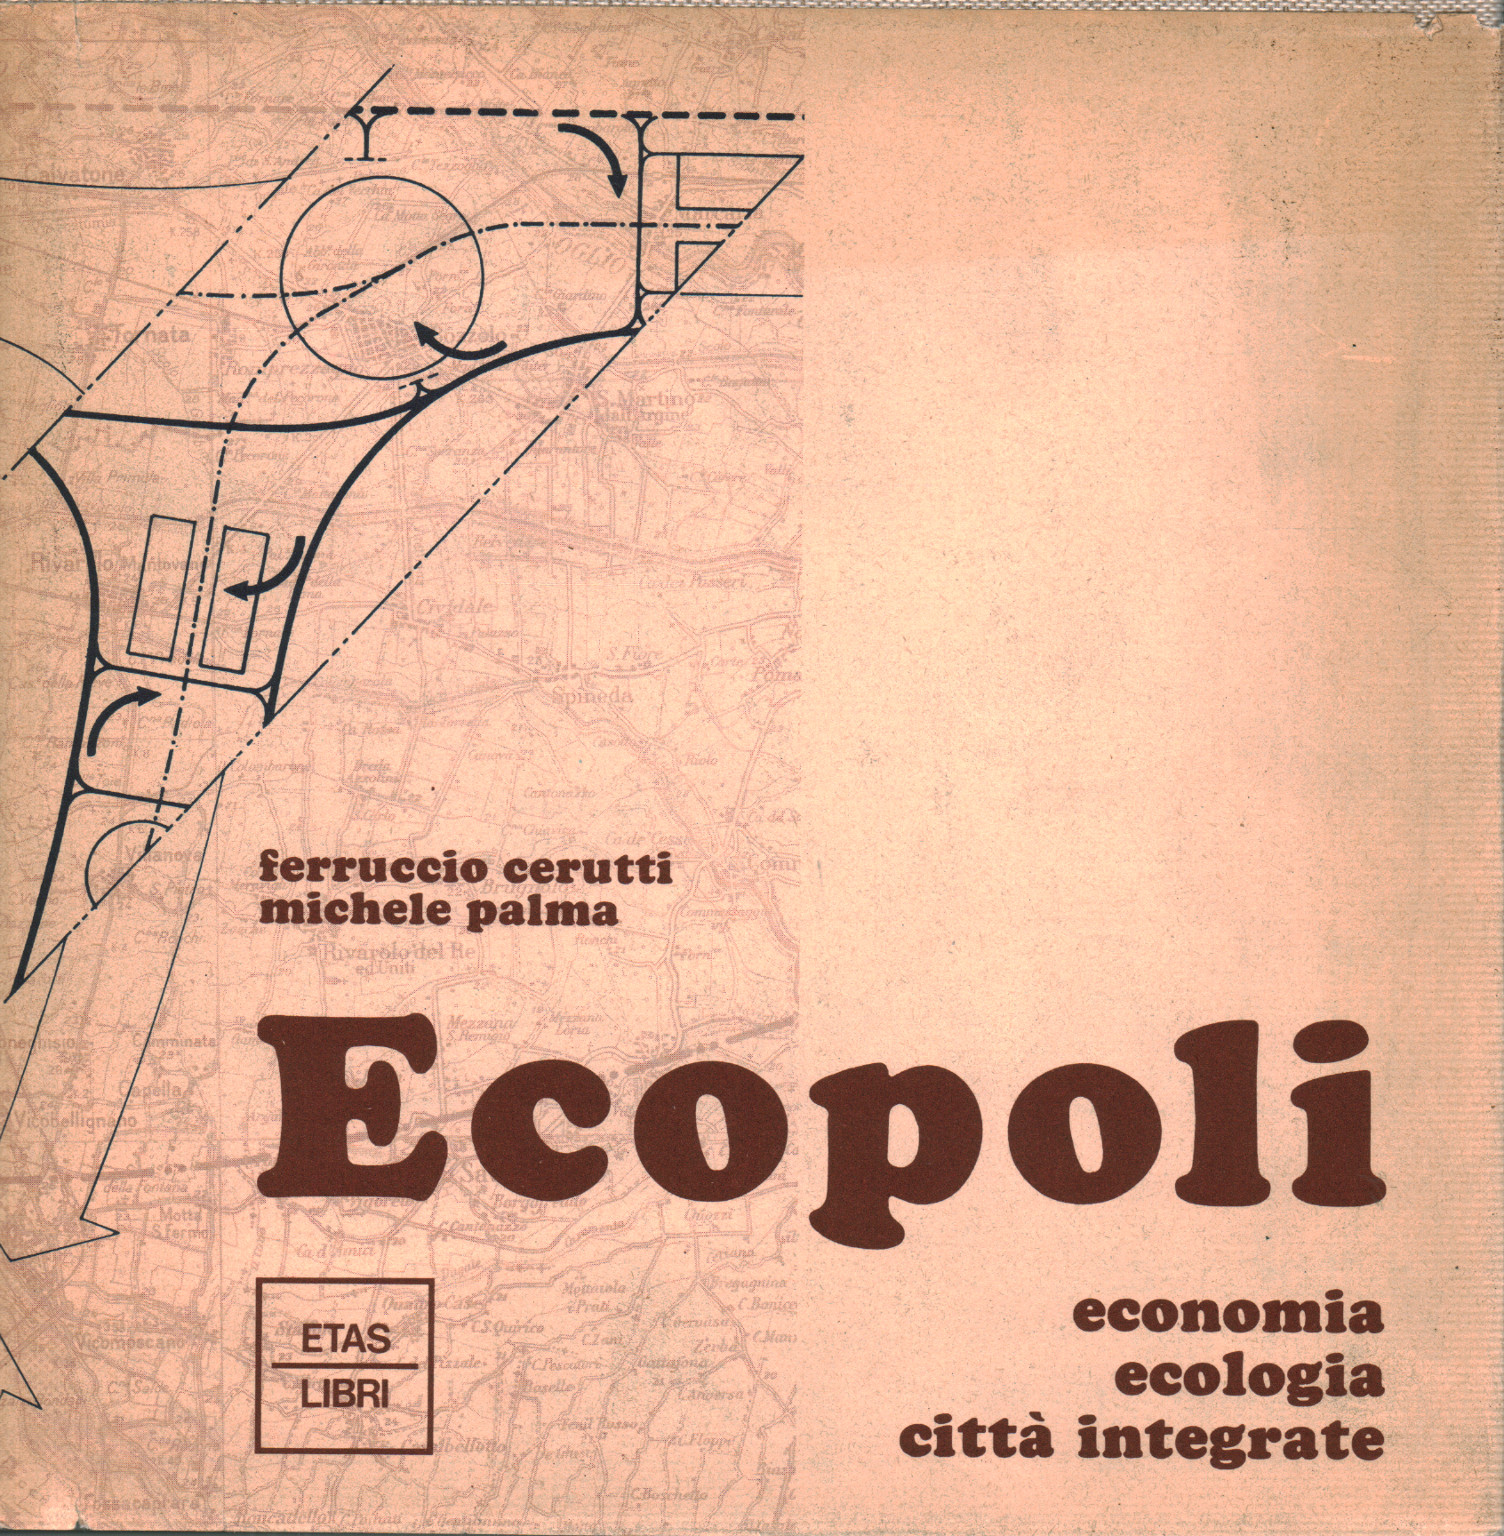 Ecopoli, s.zu.